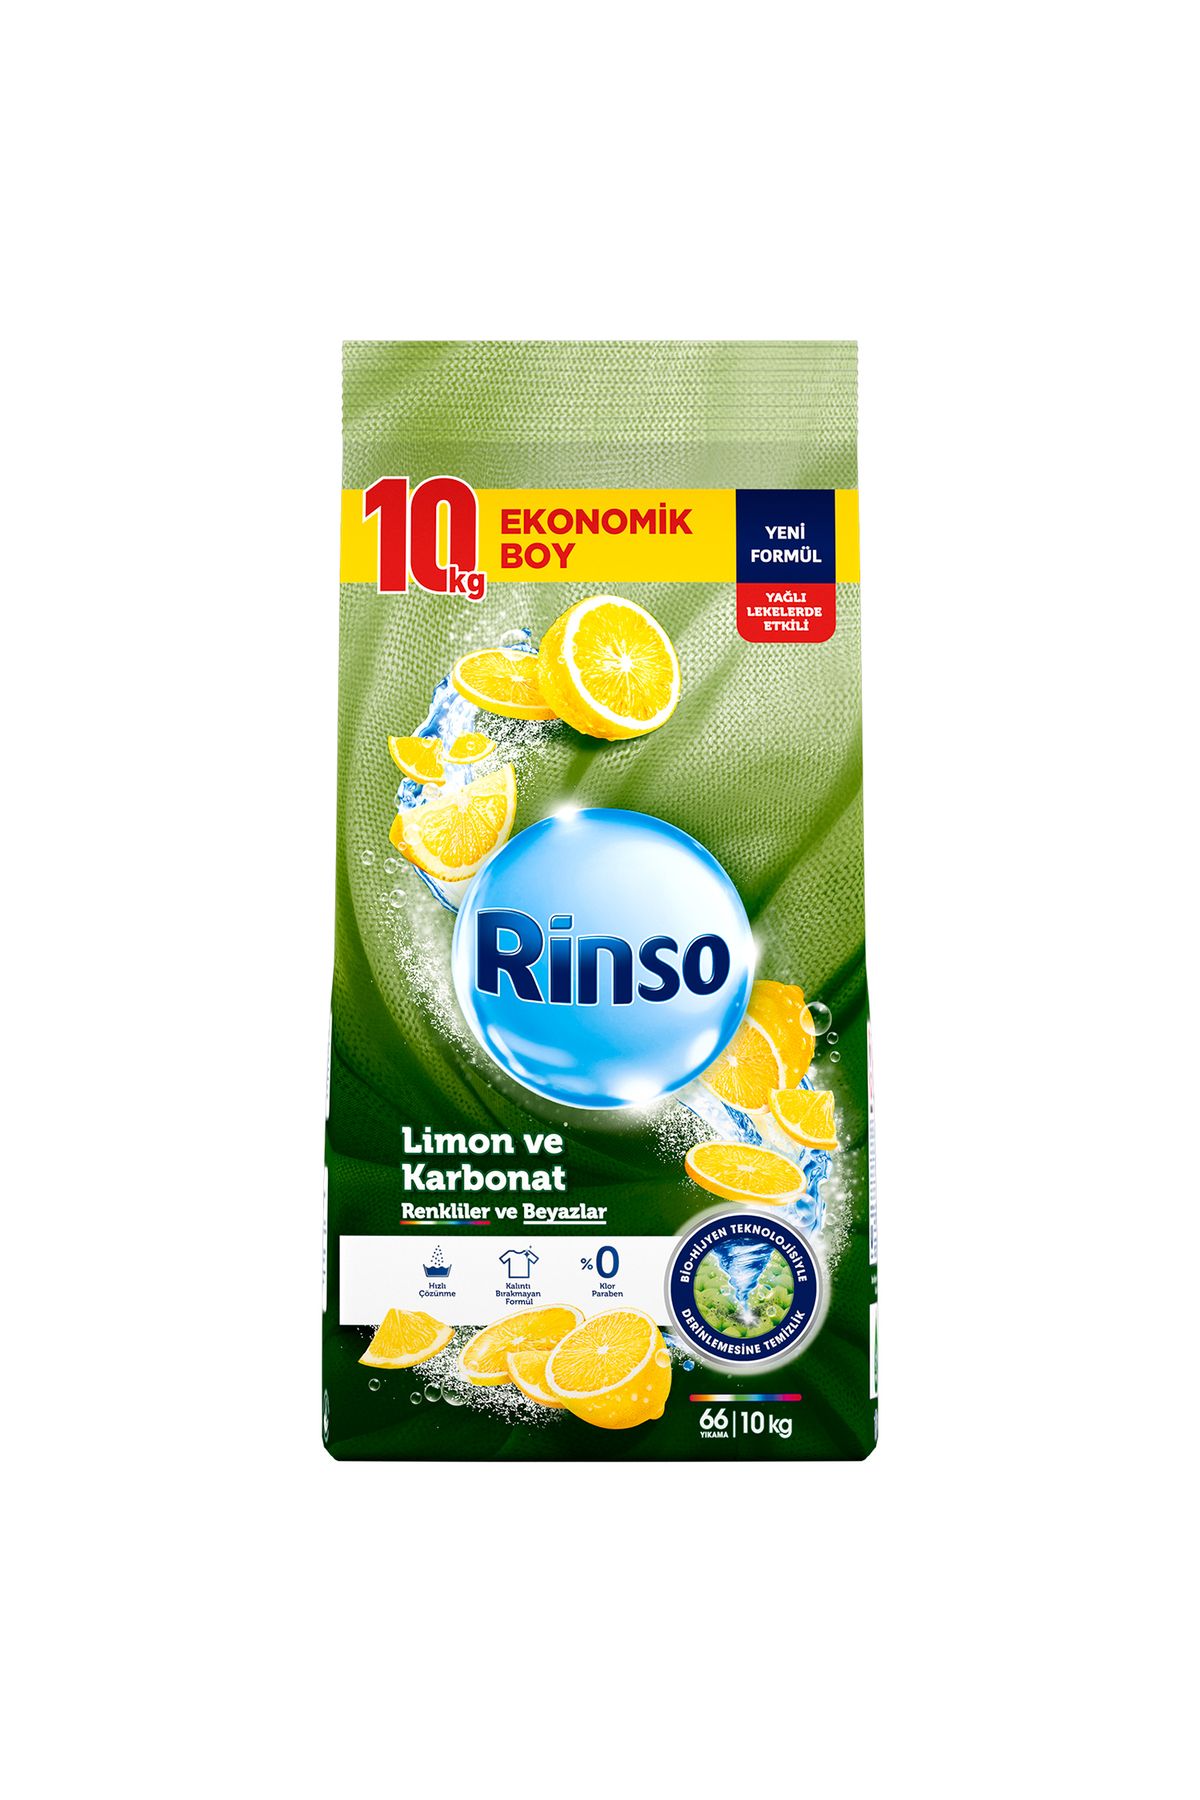 Rinso Toz Çamaşır Deterjanı Limon Ve Karbonat Renkliler Ve Beyazlar Için 10 Kg X1